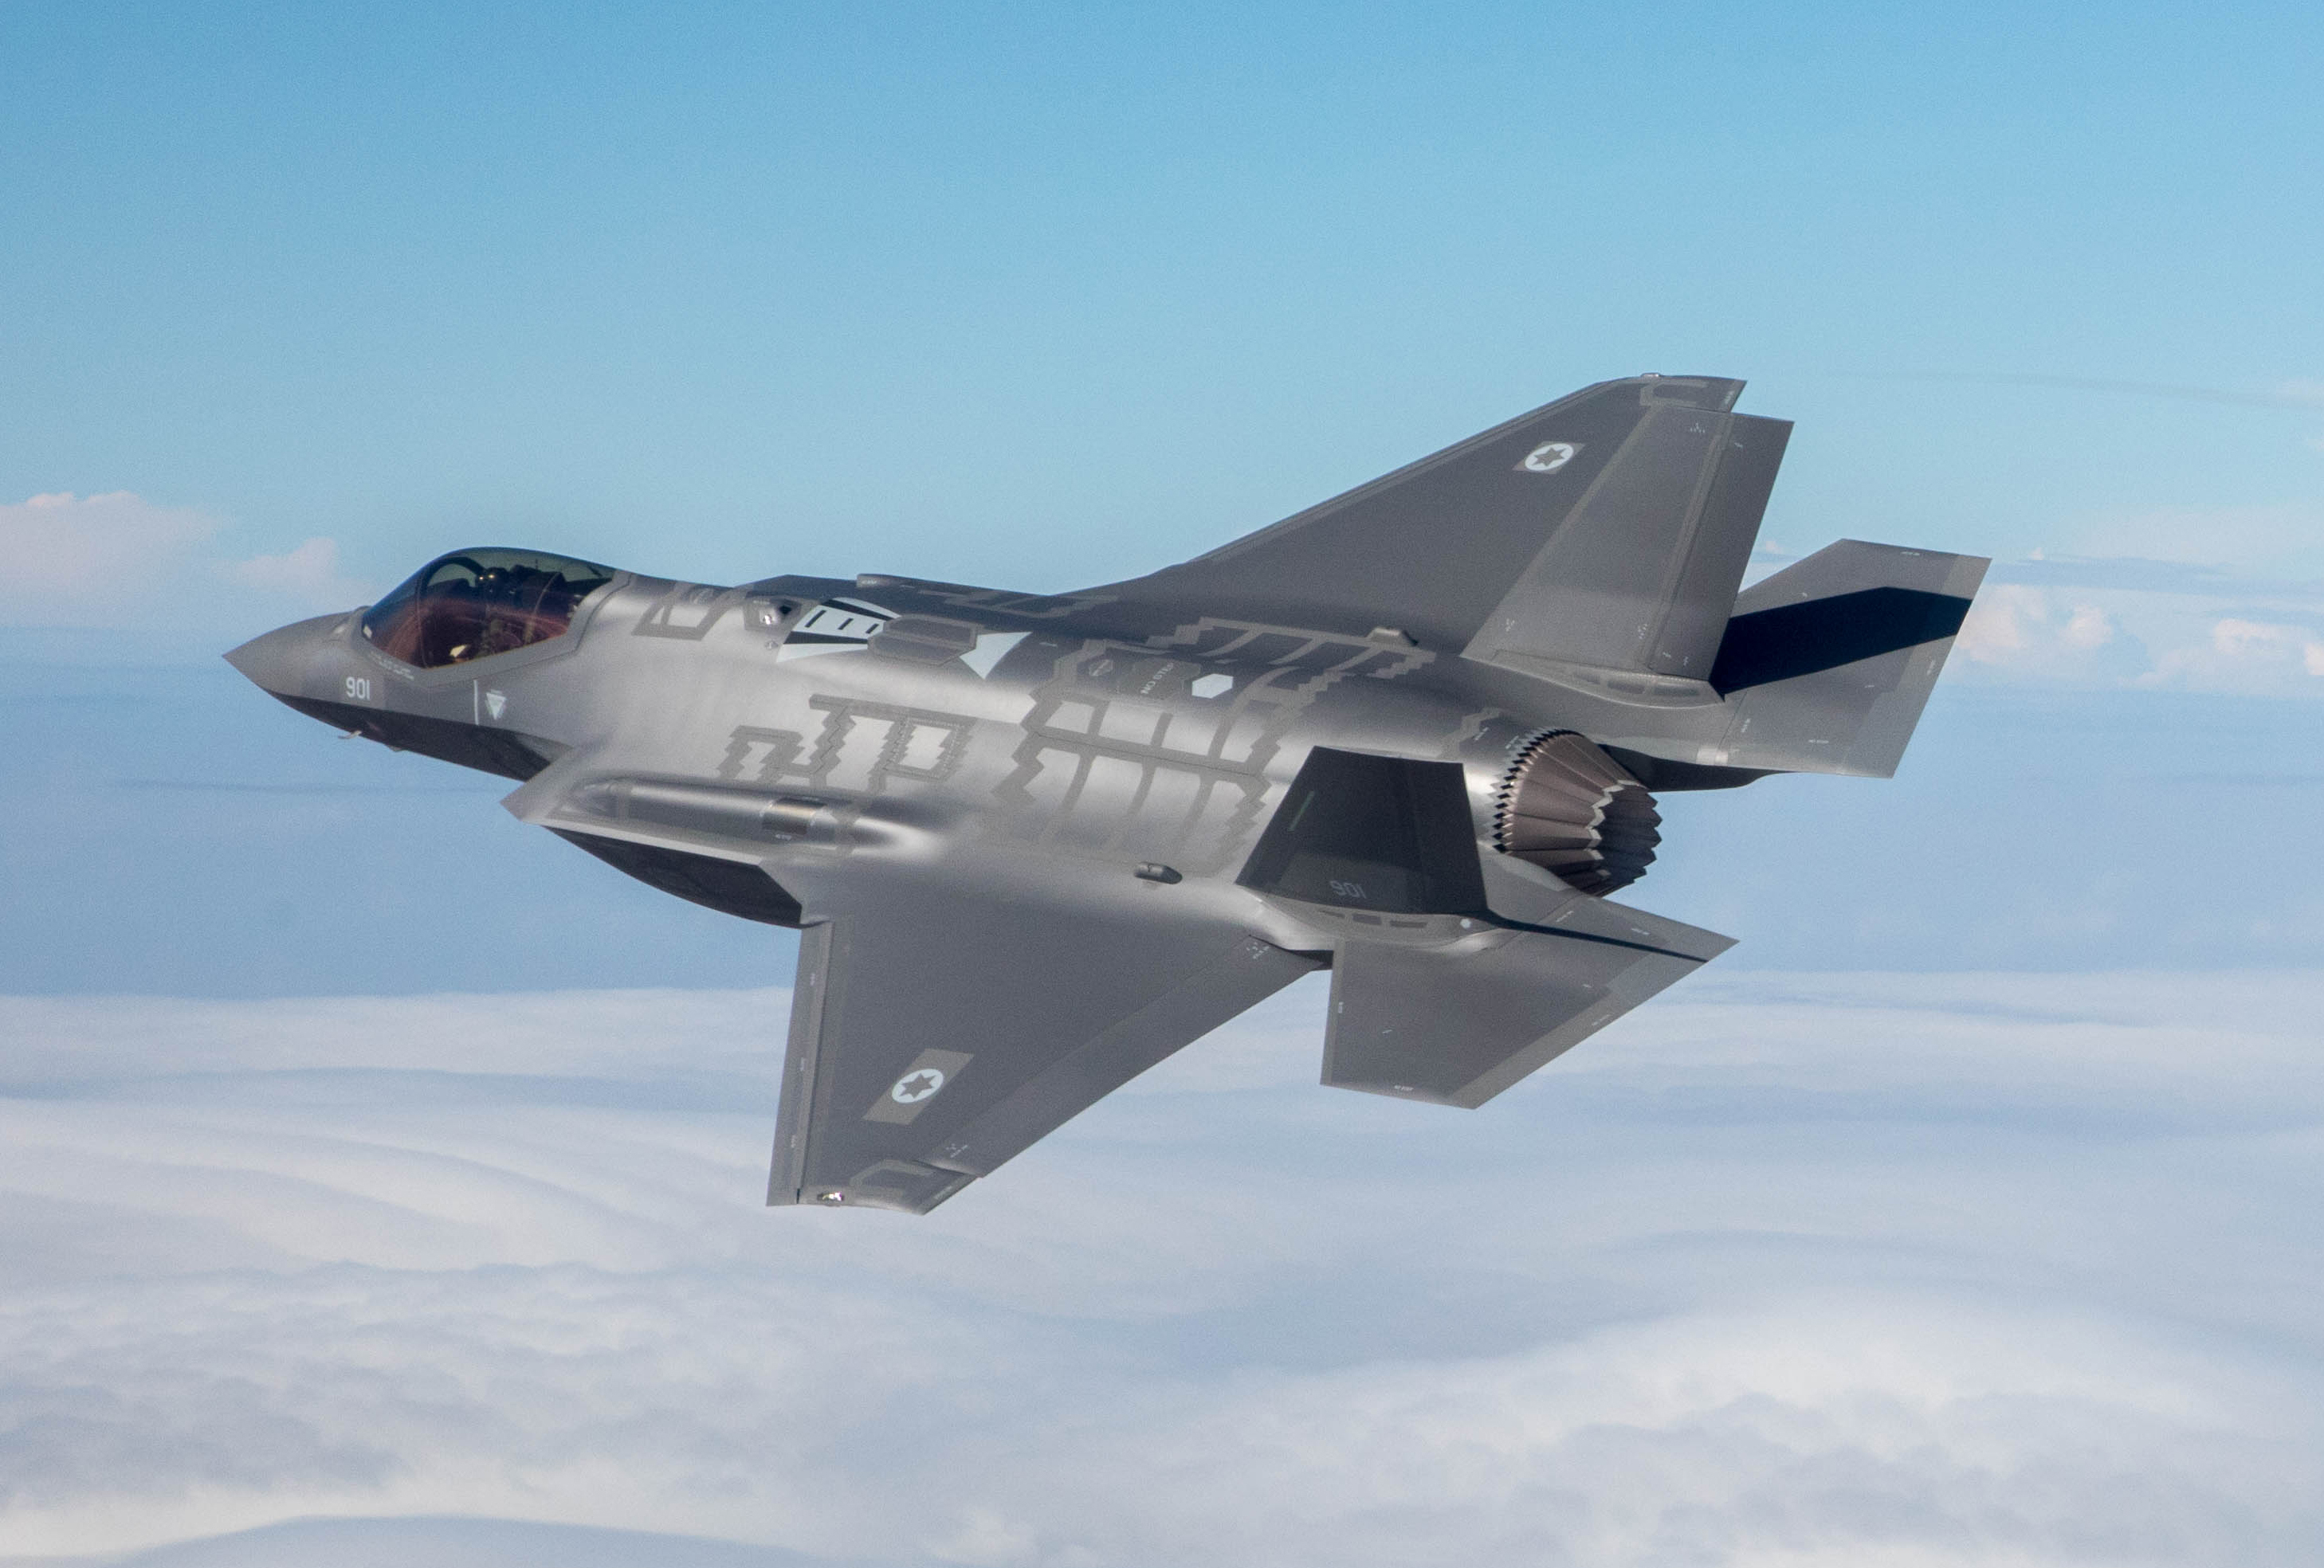 Israele ha sospeso i voli di 11 caccia F-35I Adir dopo l'incidente dell'F-35B alla base aerea statunitense